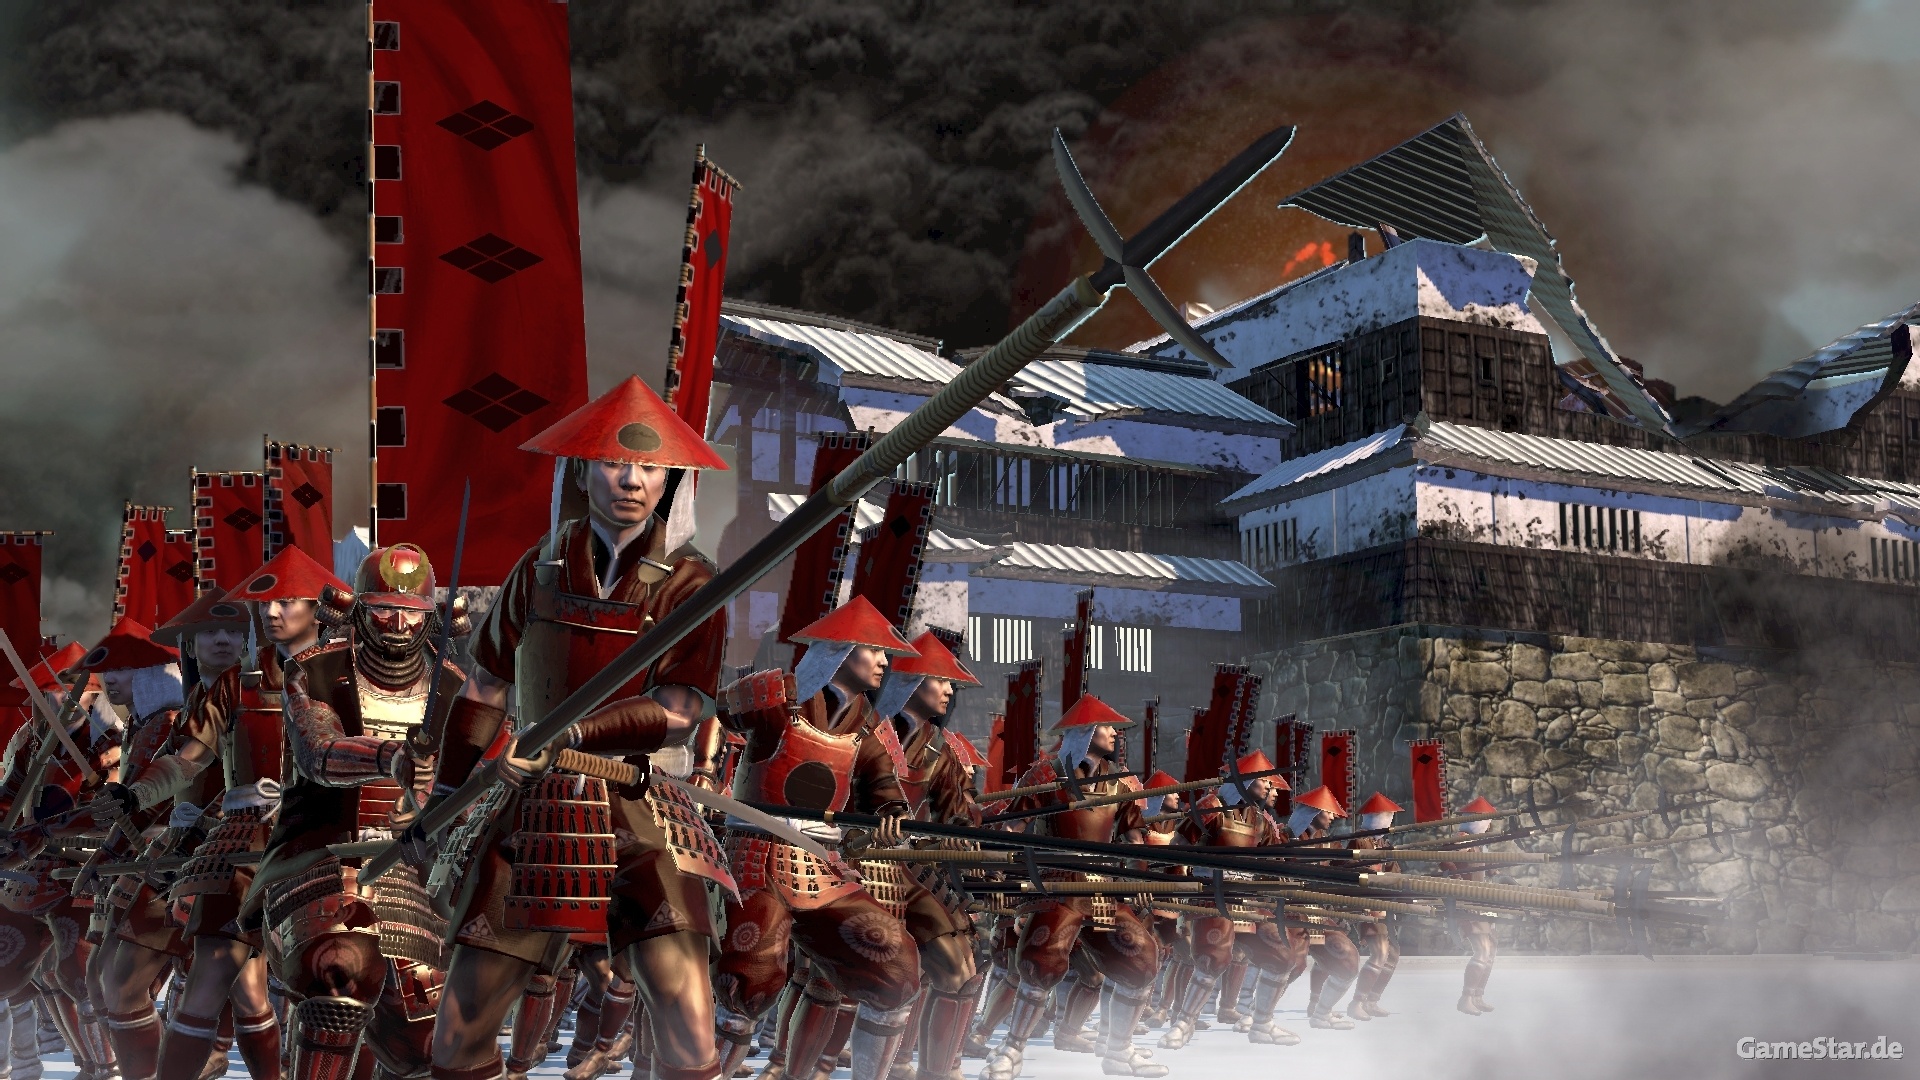 Shogun 2 Total War Wallpapers in full 1080P HD